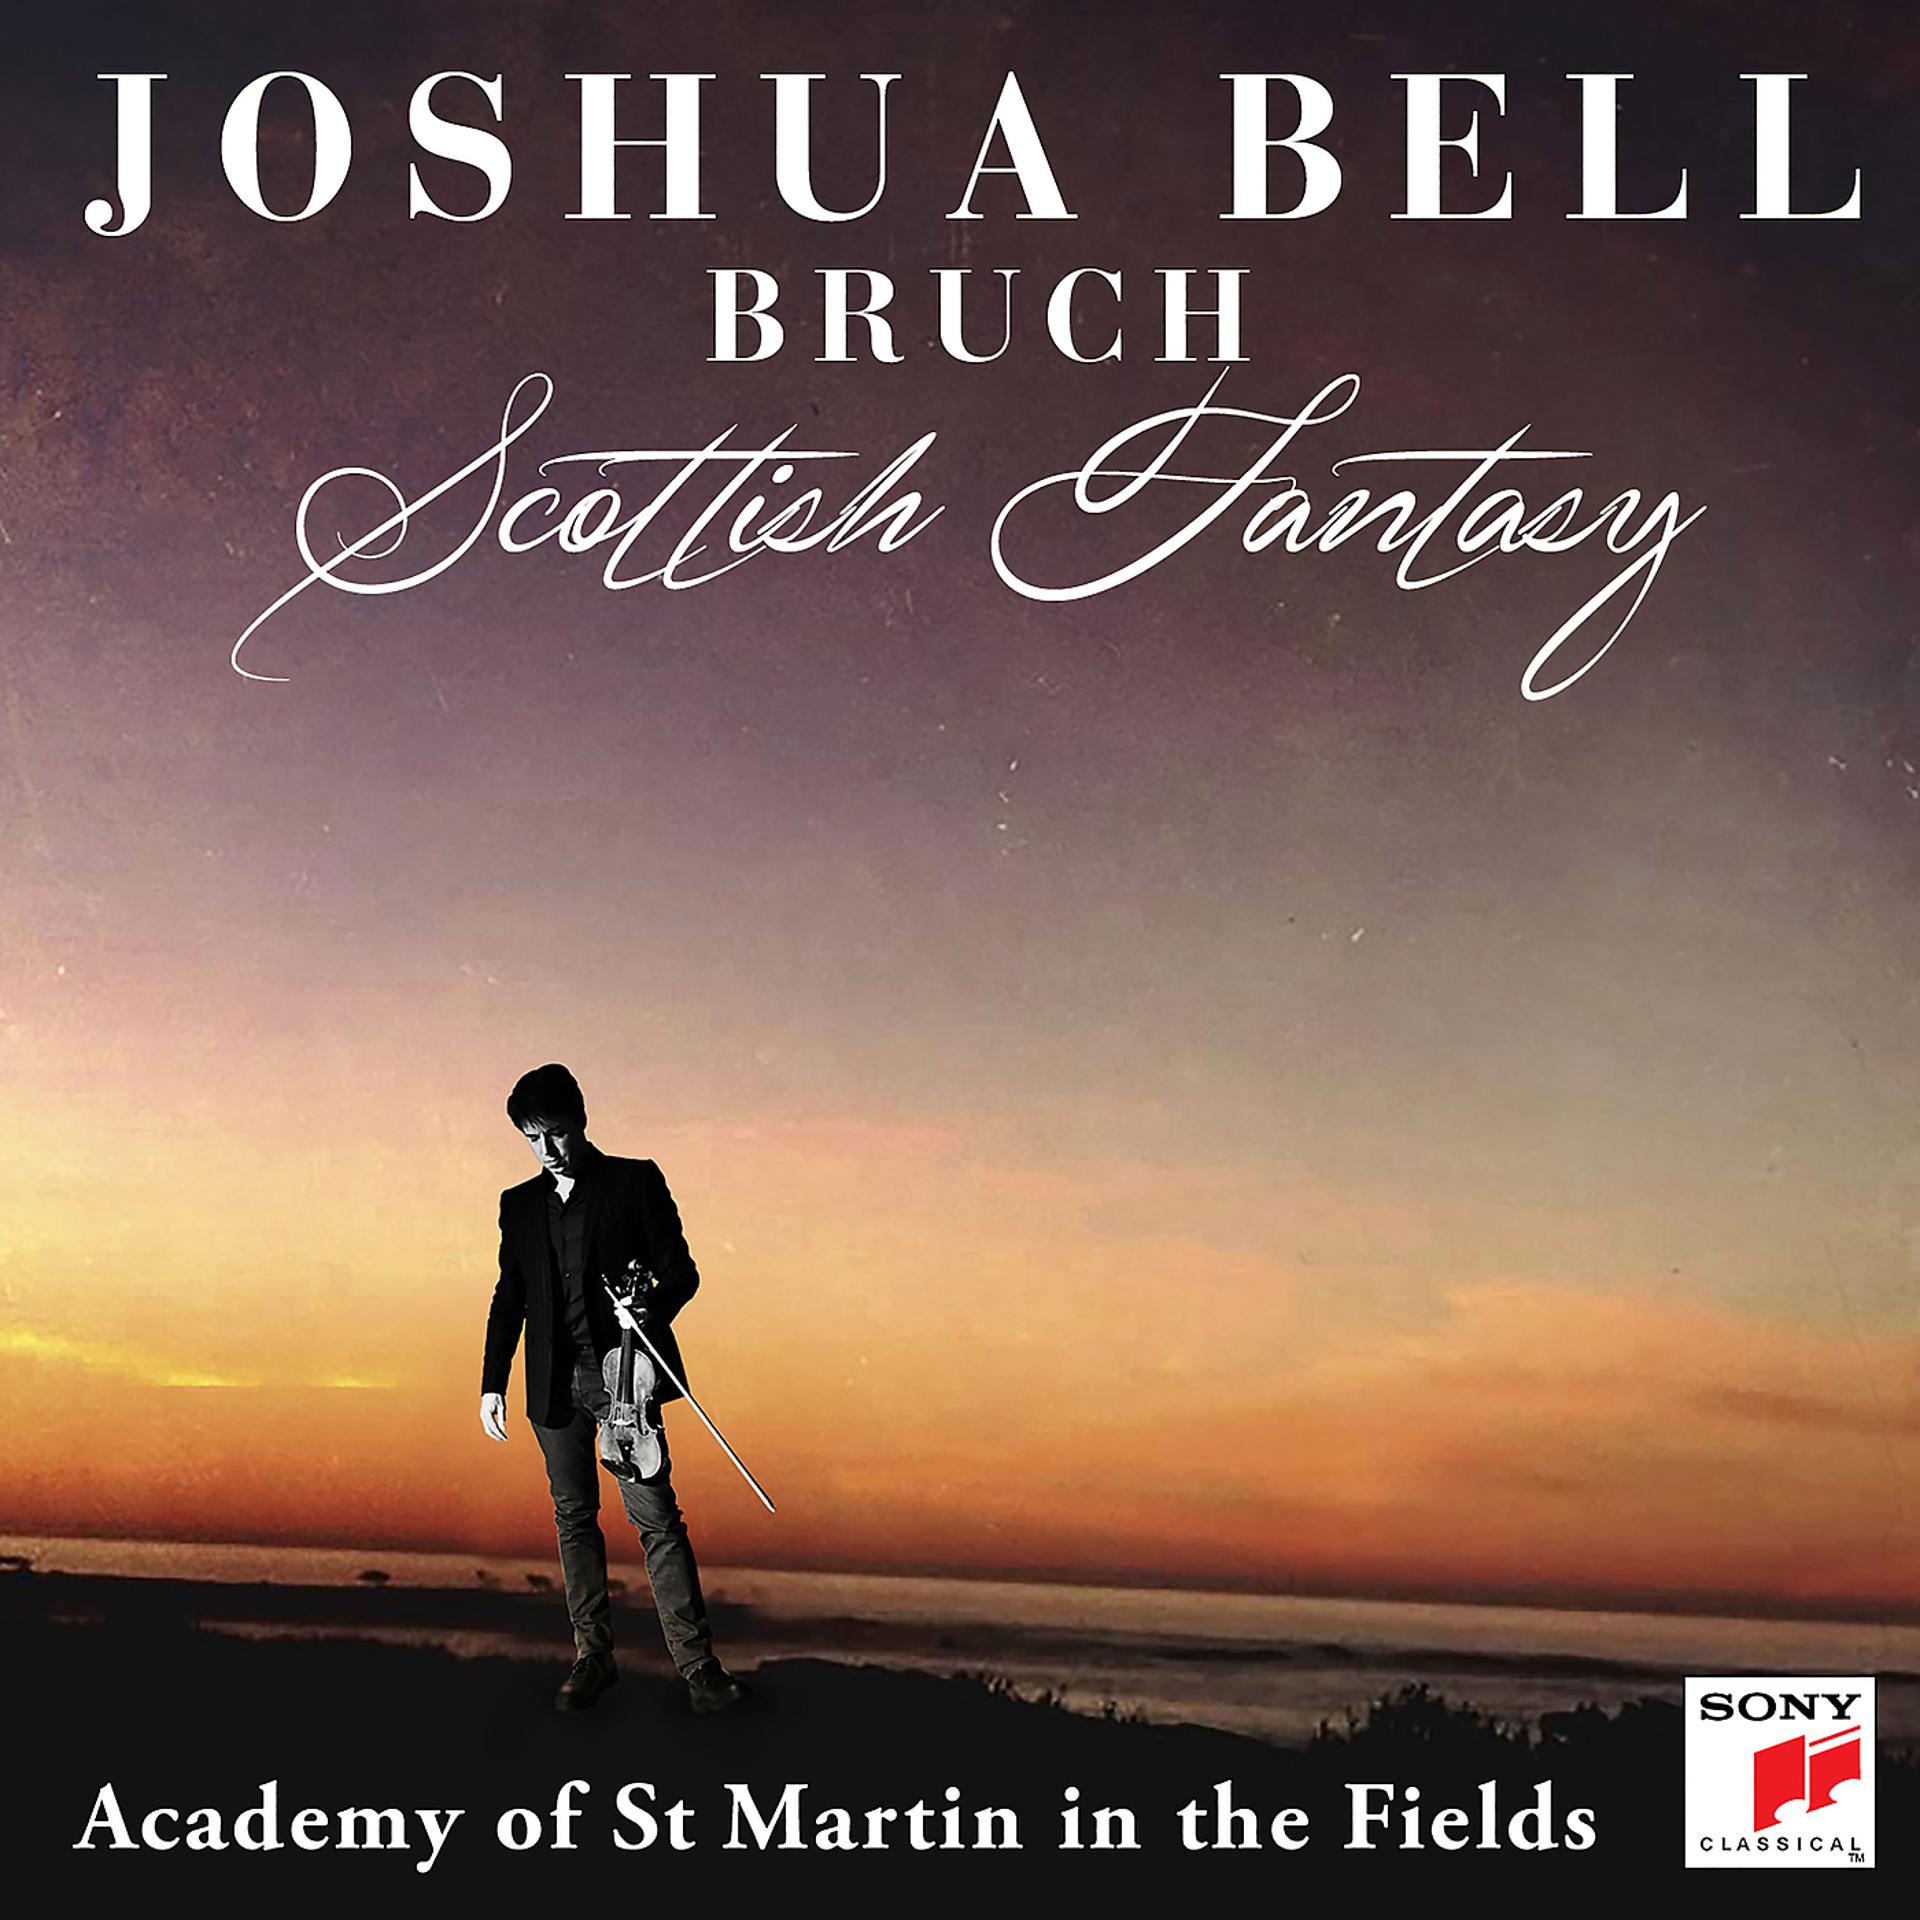 Violin bell. Joshua. Bruch. Joshua Bell Virtual Violin.